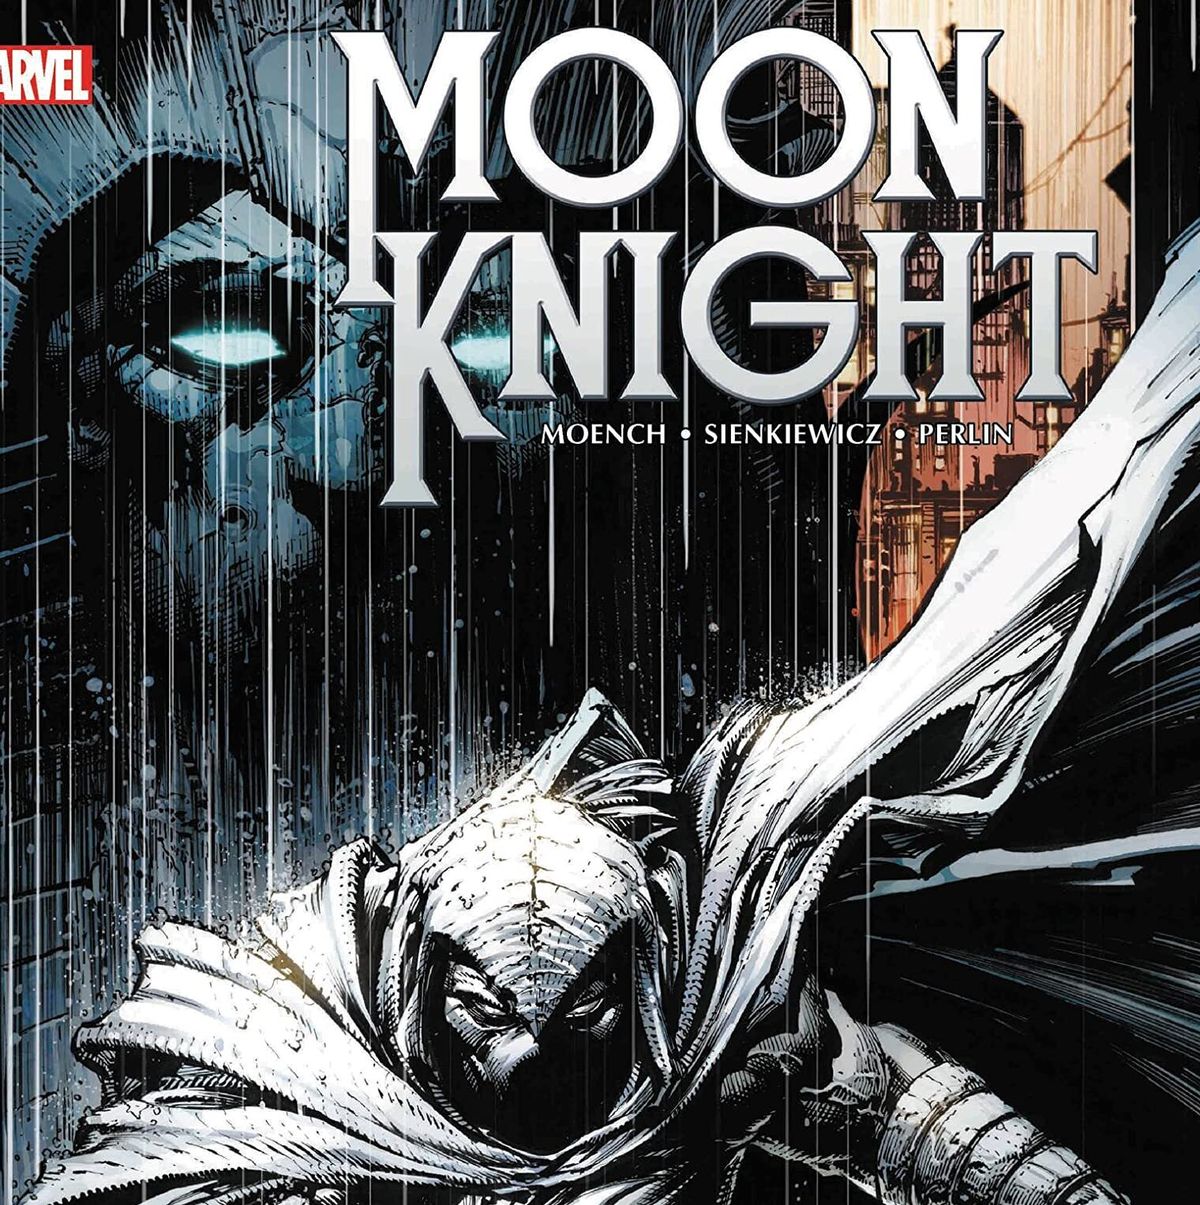 Moon Knight Comics, Moon Knight Comic Book List